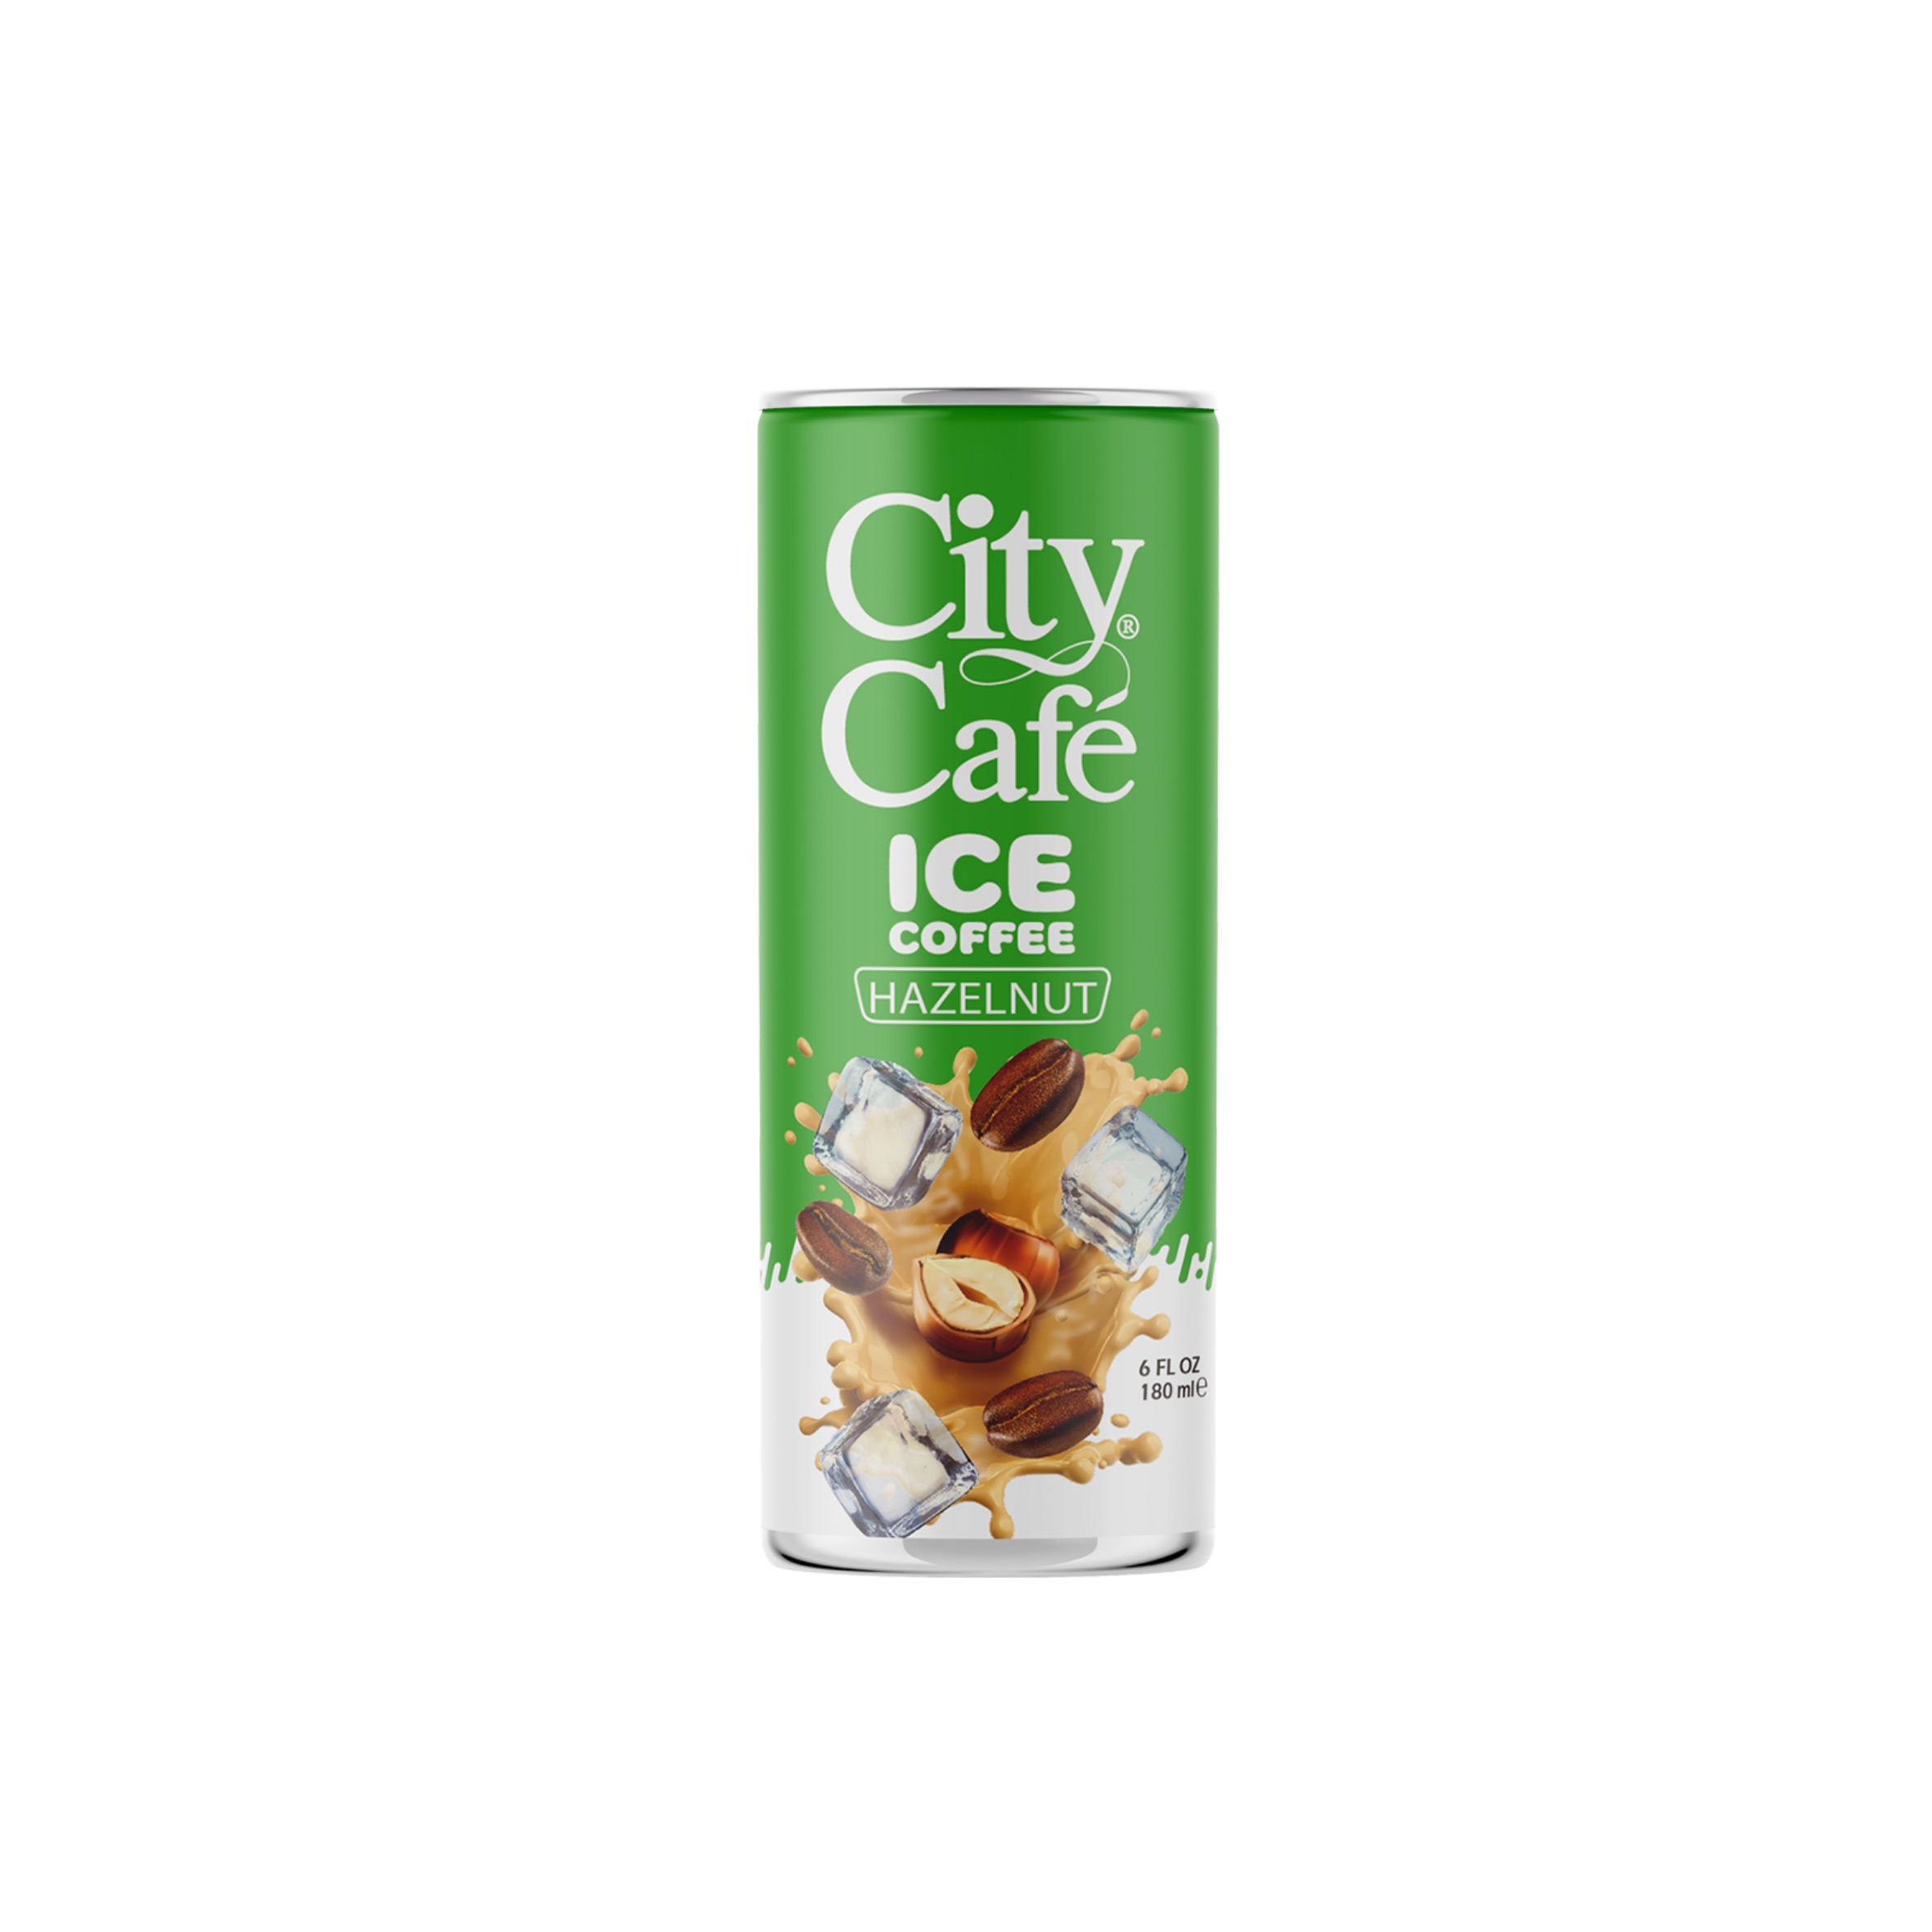 City café Ice Coffee - Hazelnut